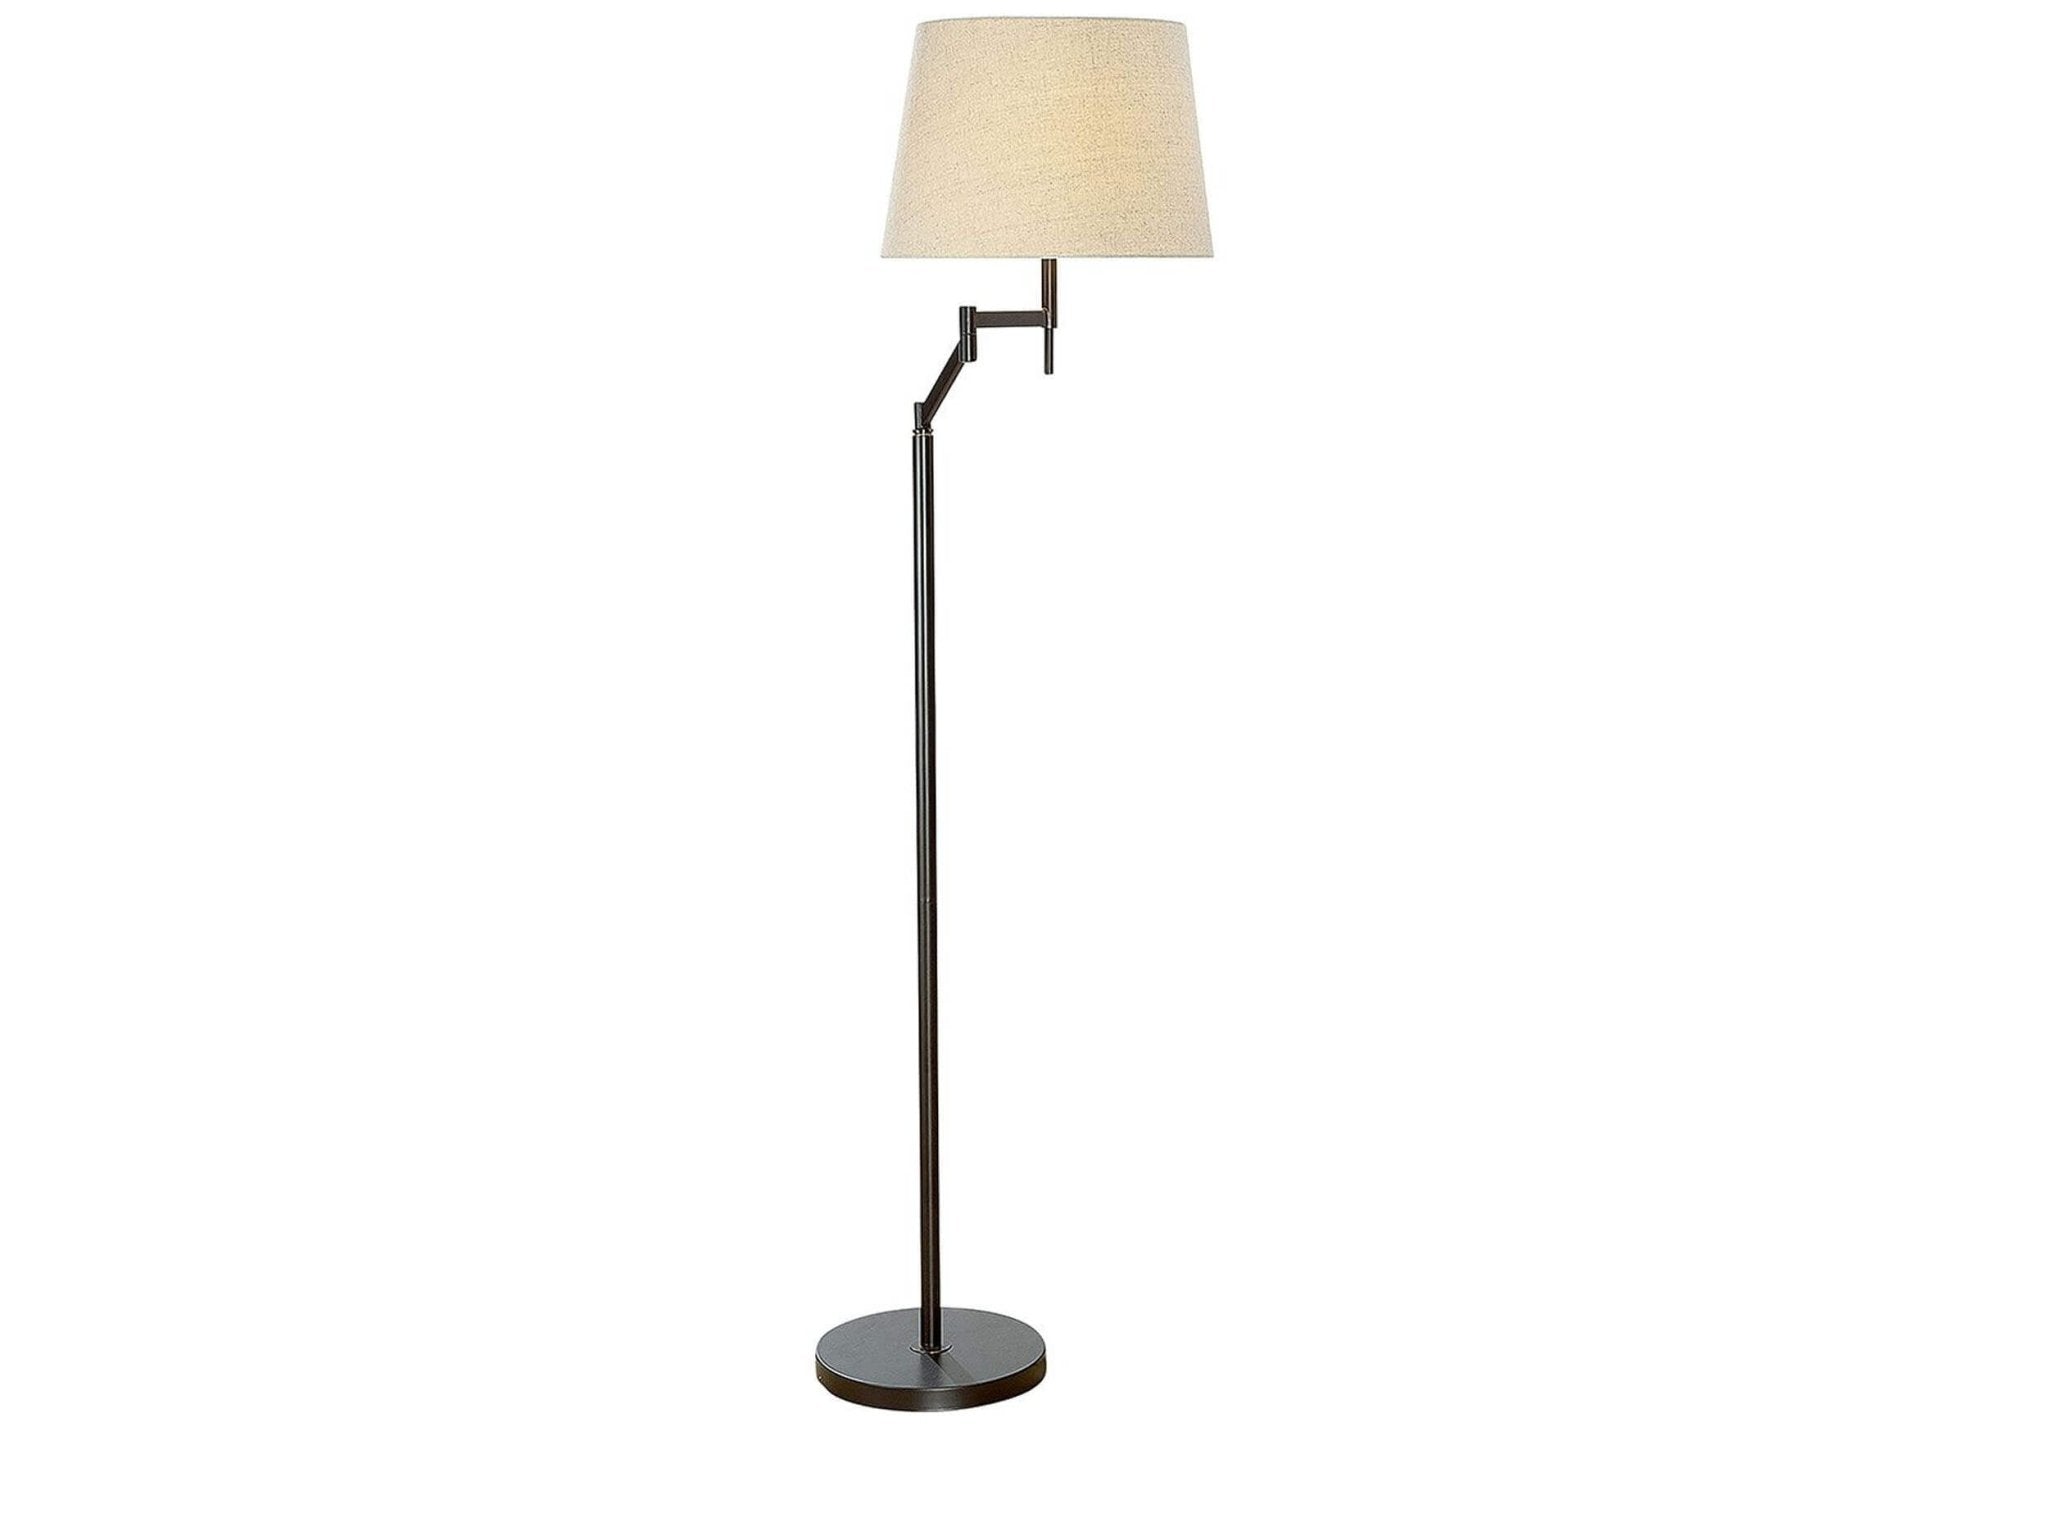 Staande lamp landelijk - brons | Elastico | H. 159 cm